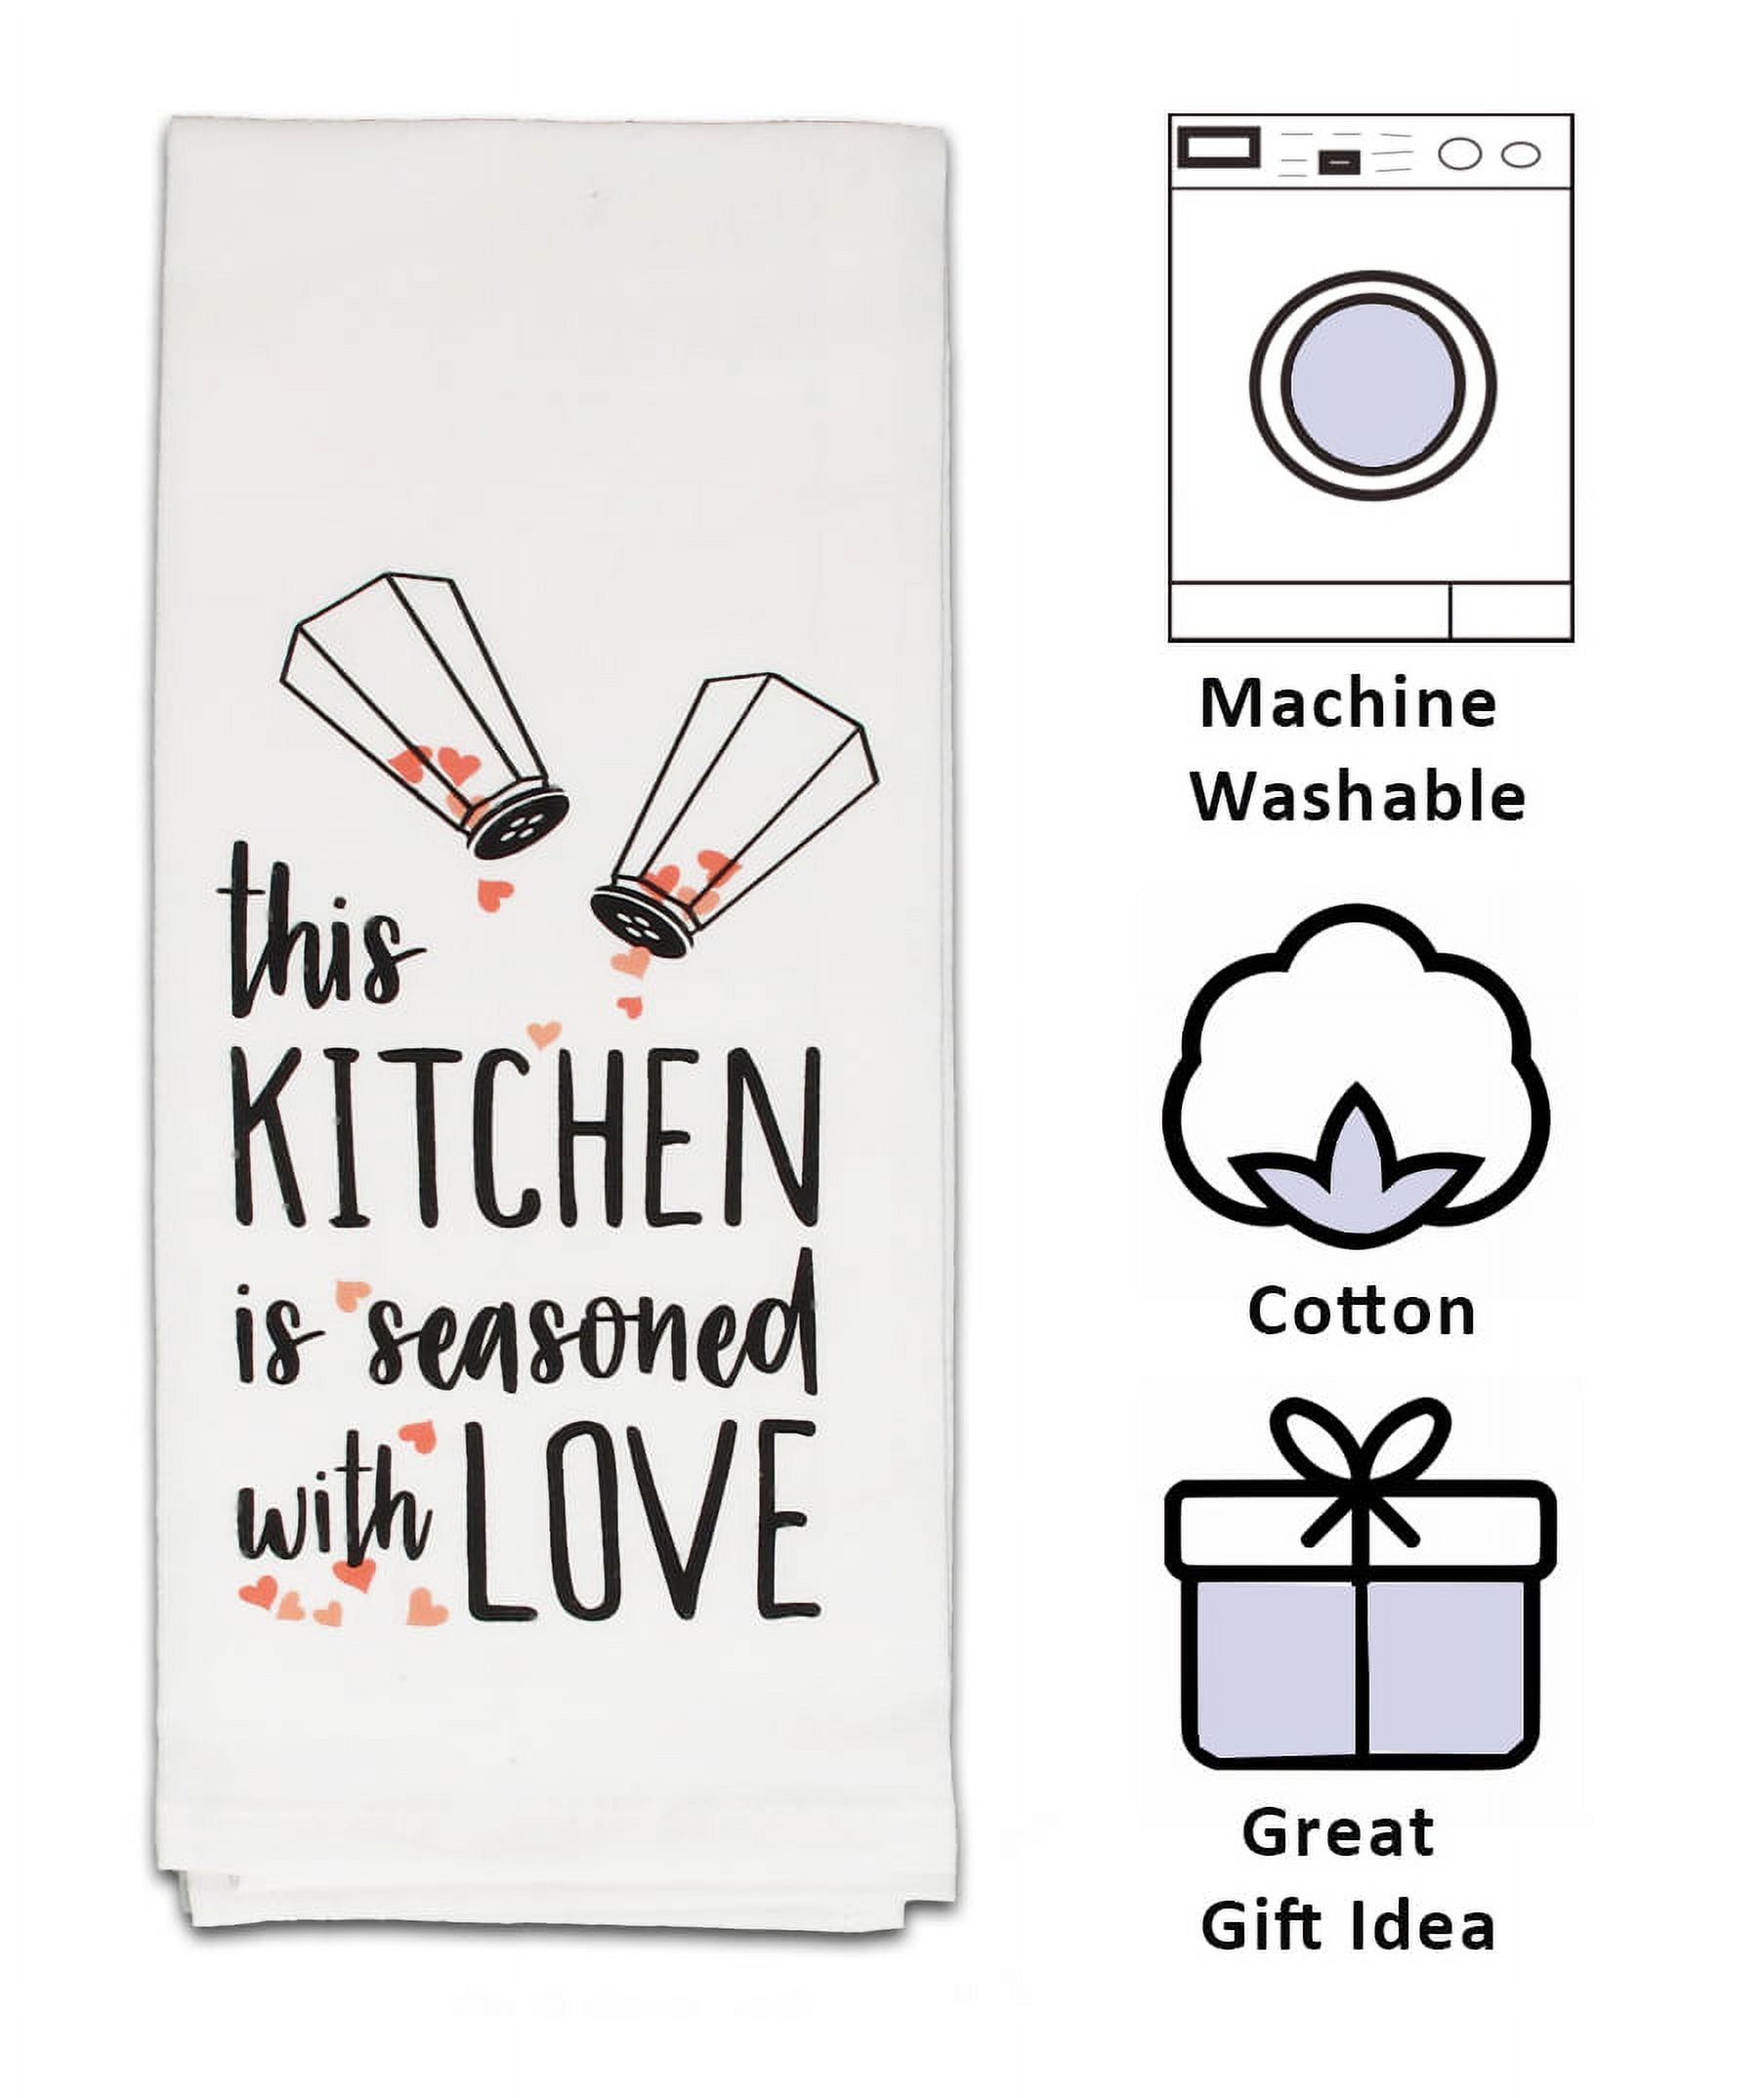 Funny Kitchen Towel SVG Bundle, Dish Towel SVG, (137803)